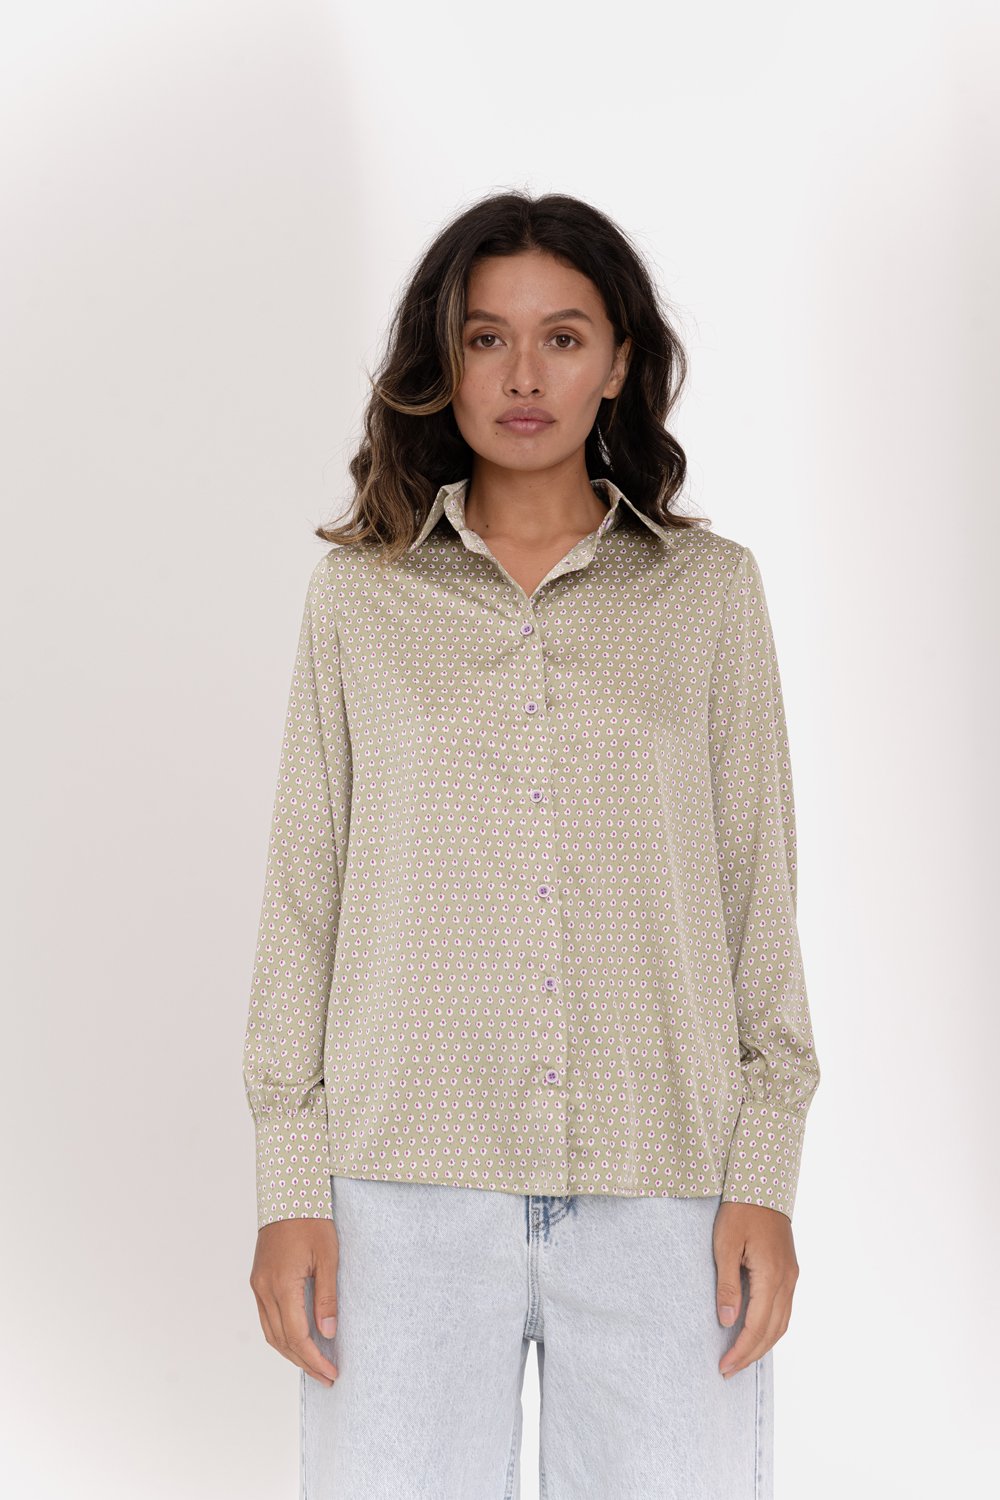 Elegant loose fit blouse in olive color